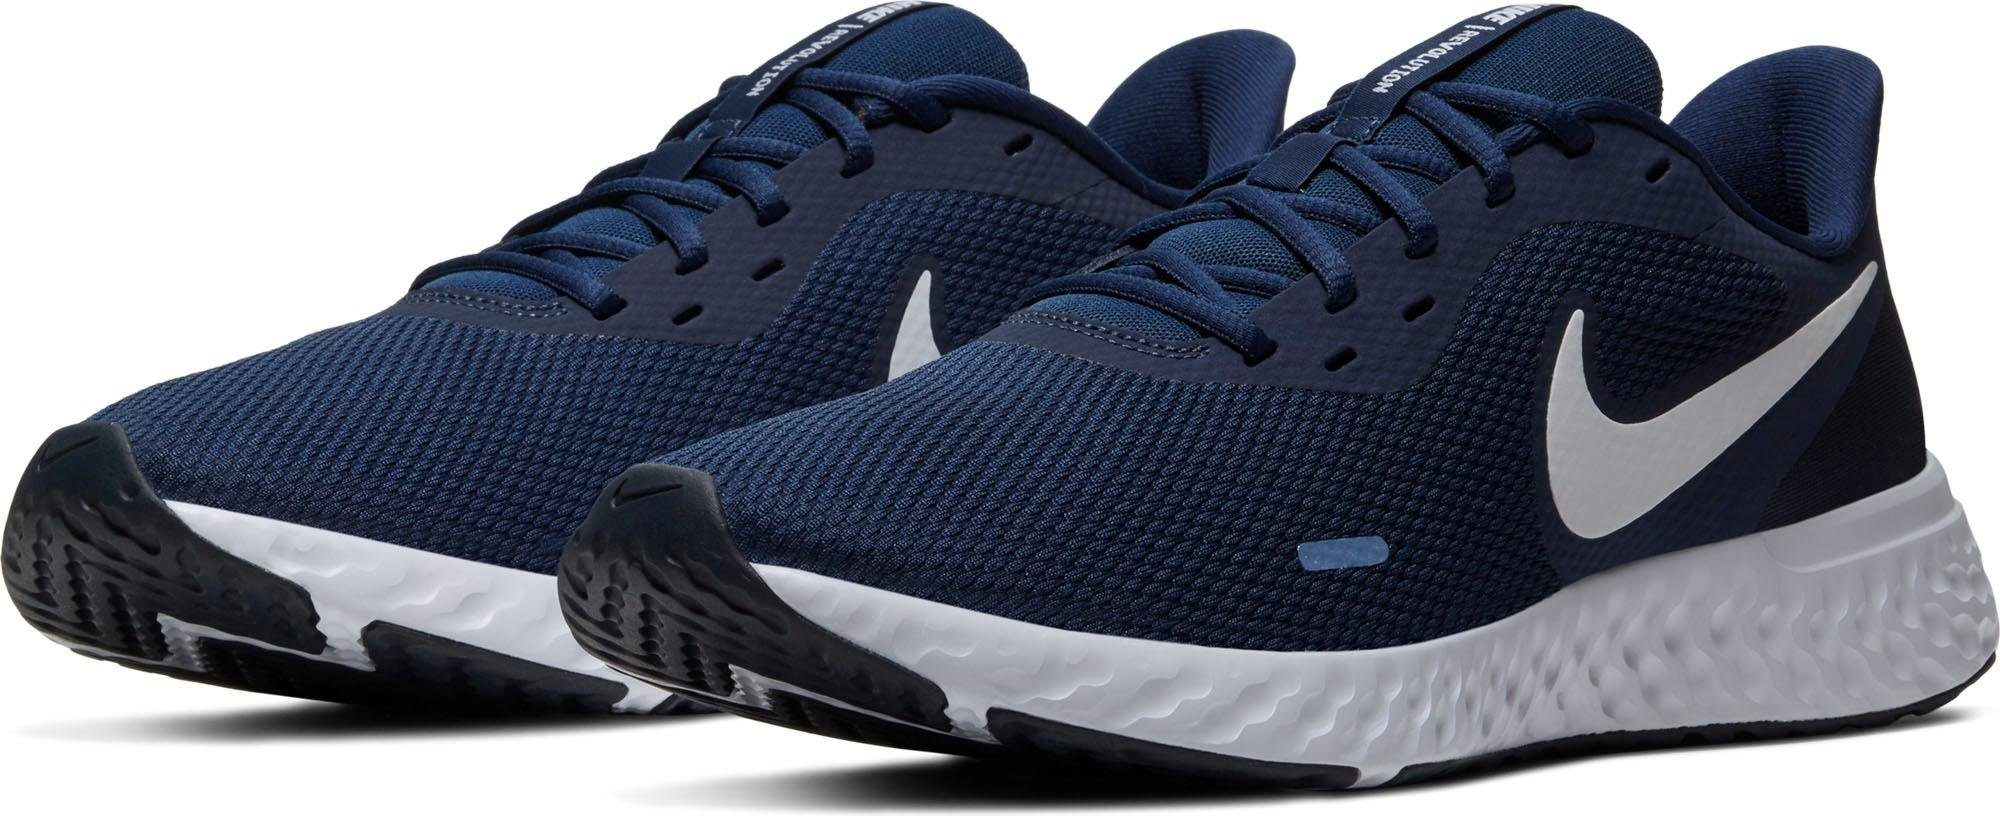 Nike »Revolution 5« Laufschuh online kaufen | OTTO